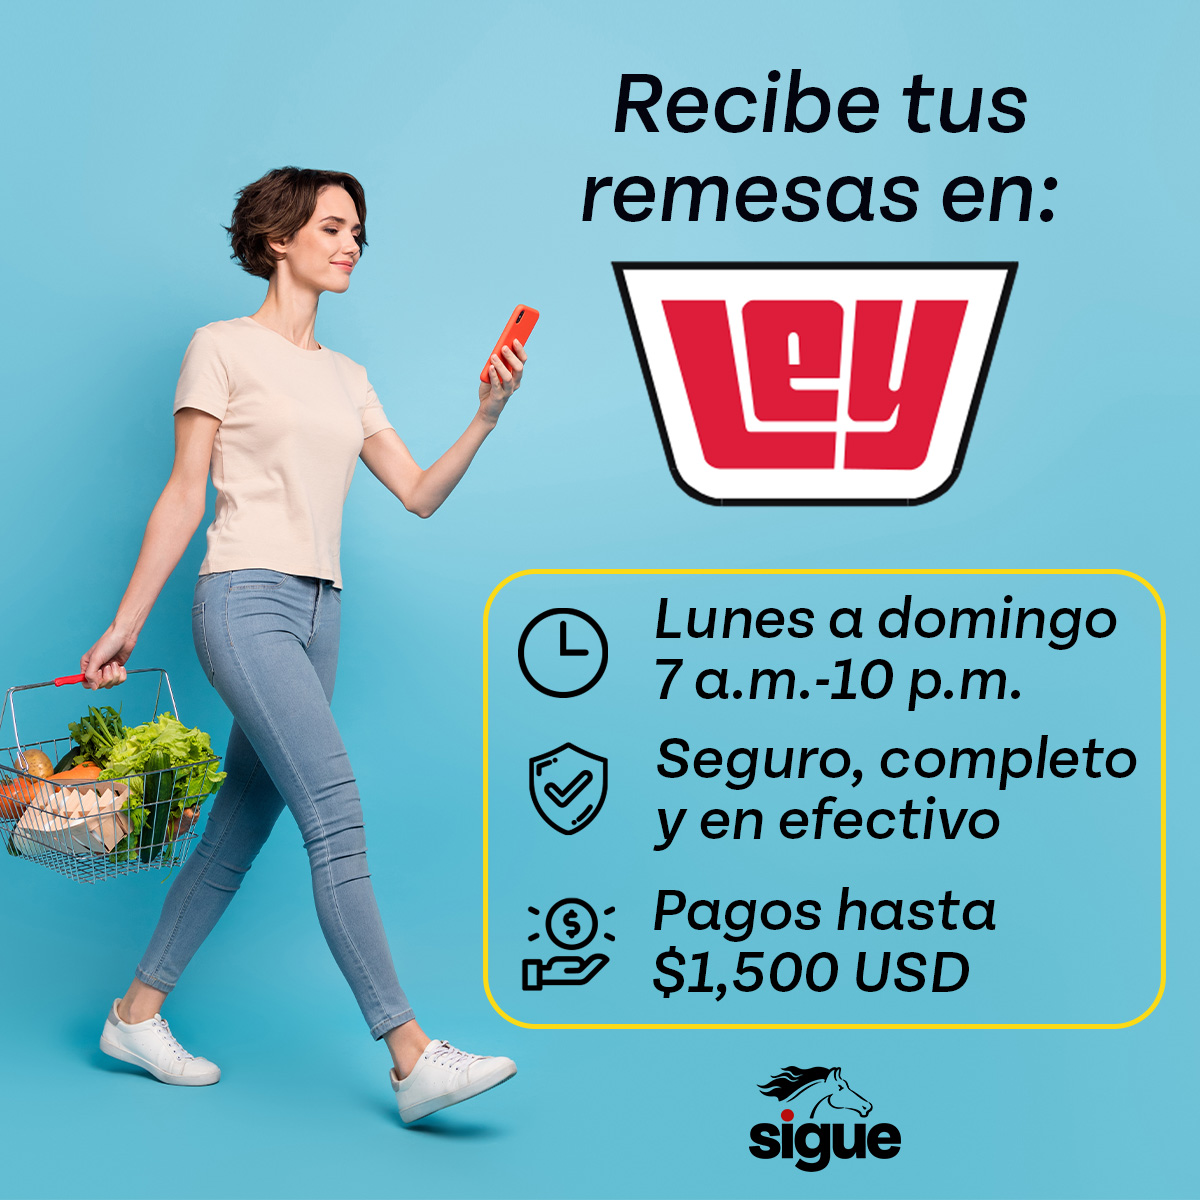 ¡Enviar dinero a México ahora es más conveniente! Envía tu remesa con Sigue y tu familia lo recibe en Casa Ley en efectivo y de forma segura! 👍🇲🇽💸

#remesasmexico #mexico  #tiendasLey #casaley #envíodedinero